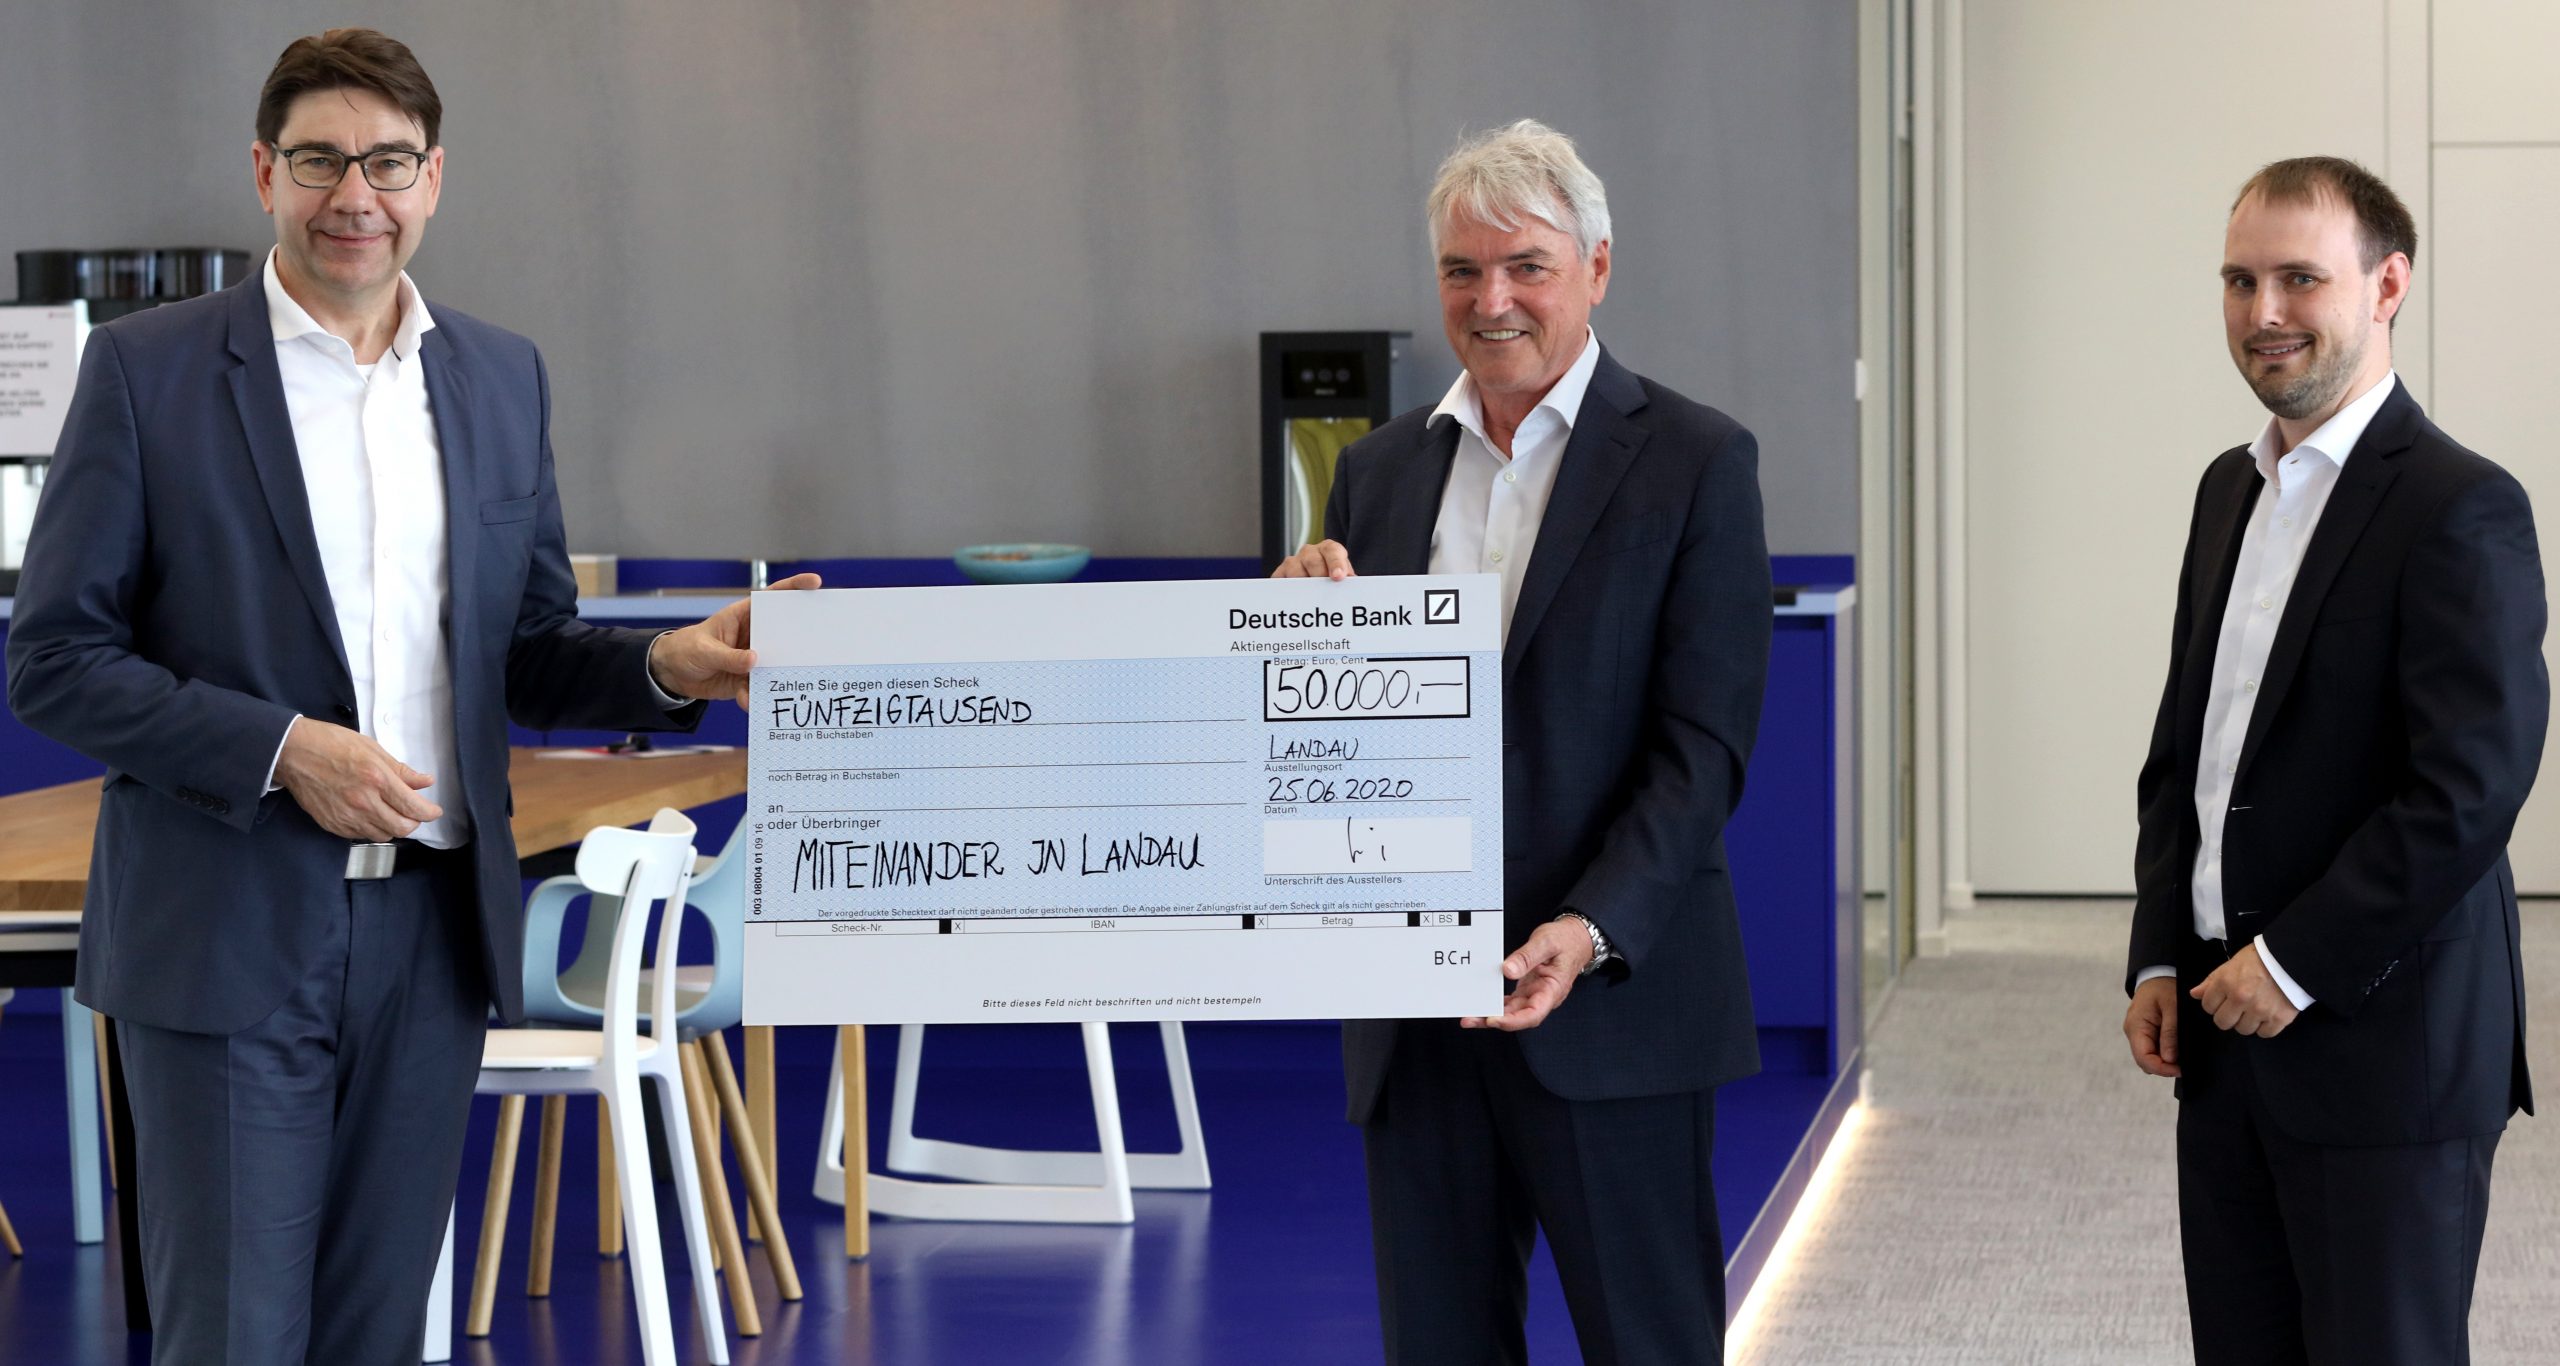 Für das Corona Hilfspaket "Miteinander in Landau" spendete Progroup 50.000 Euro.